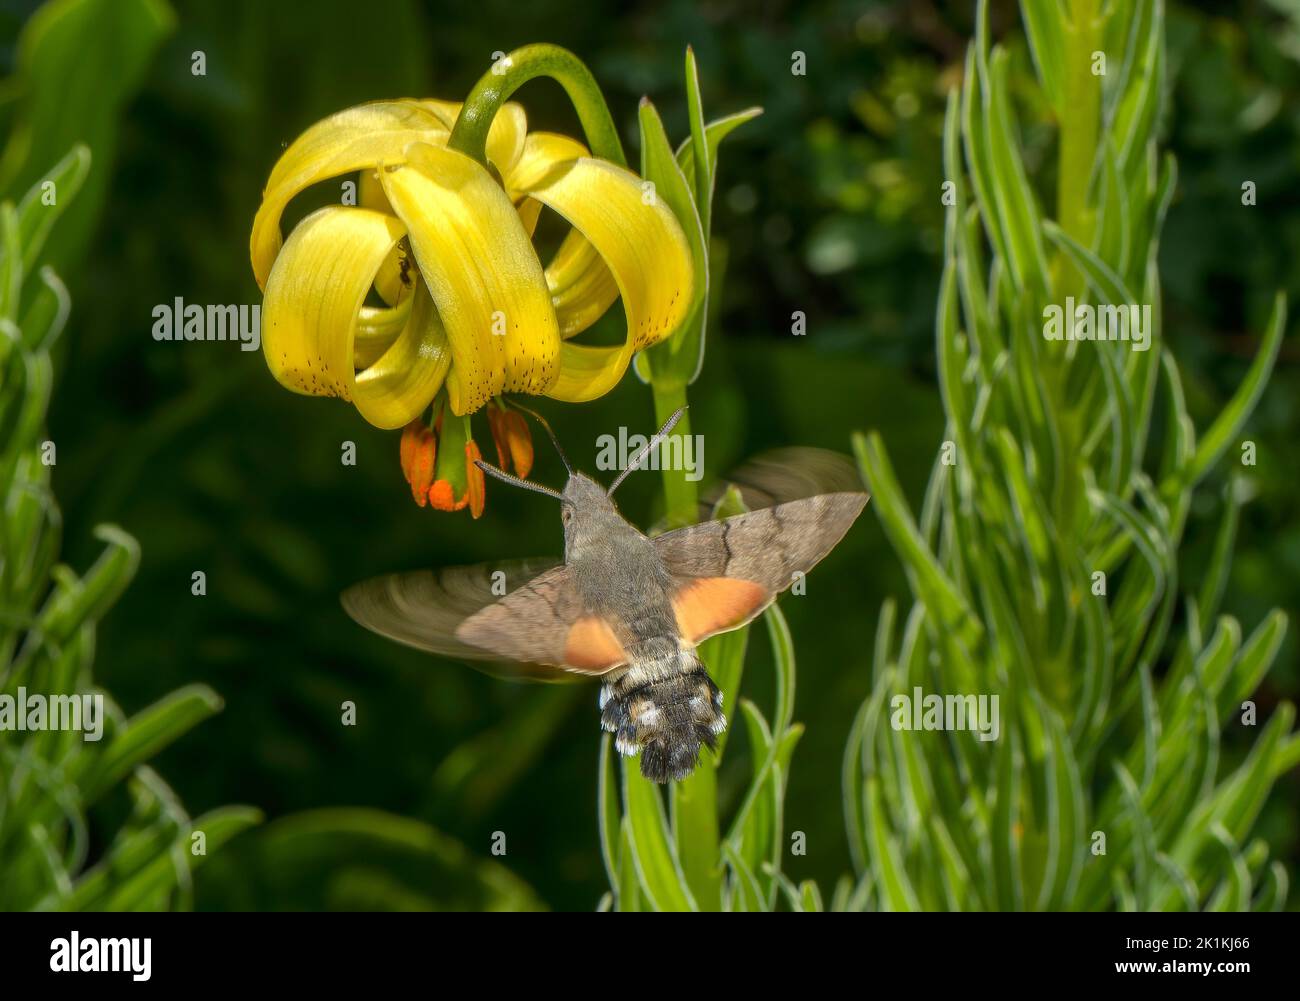 La polilla del halcón de las aves humming, Macroglossum stellatarum visitando las flores del lirio pirenaico, Pirineos. Foto de stock